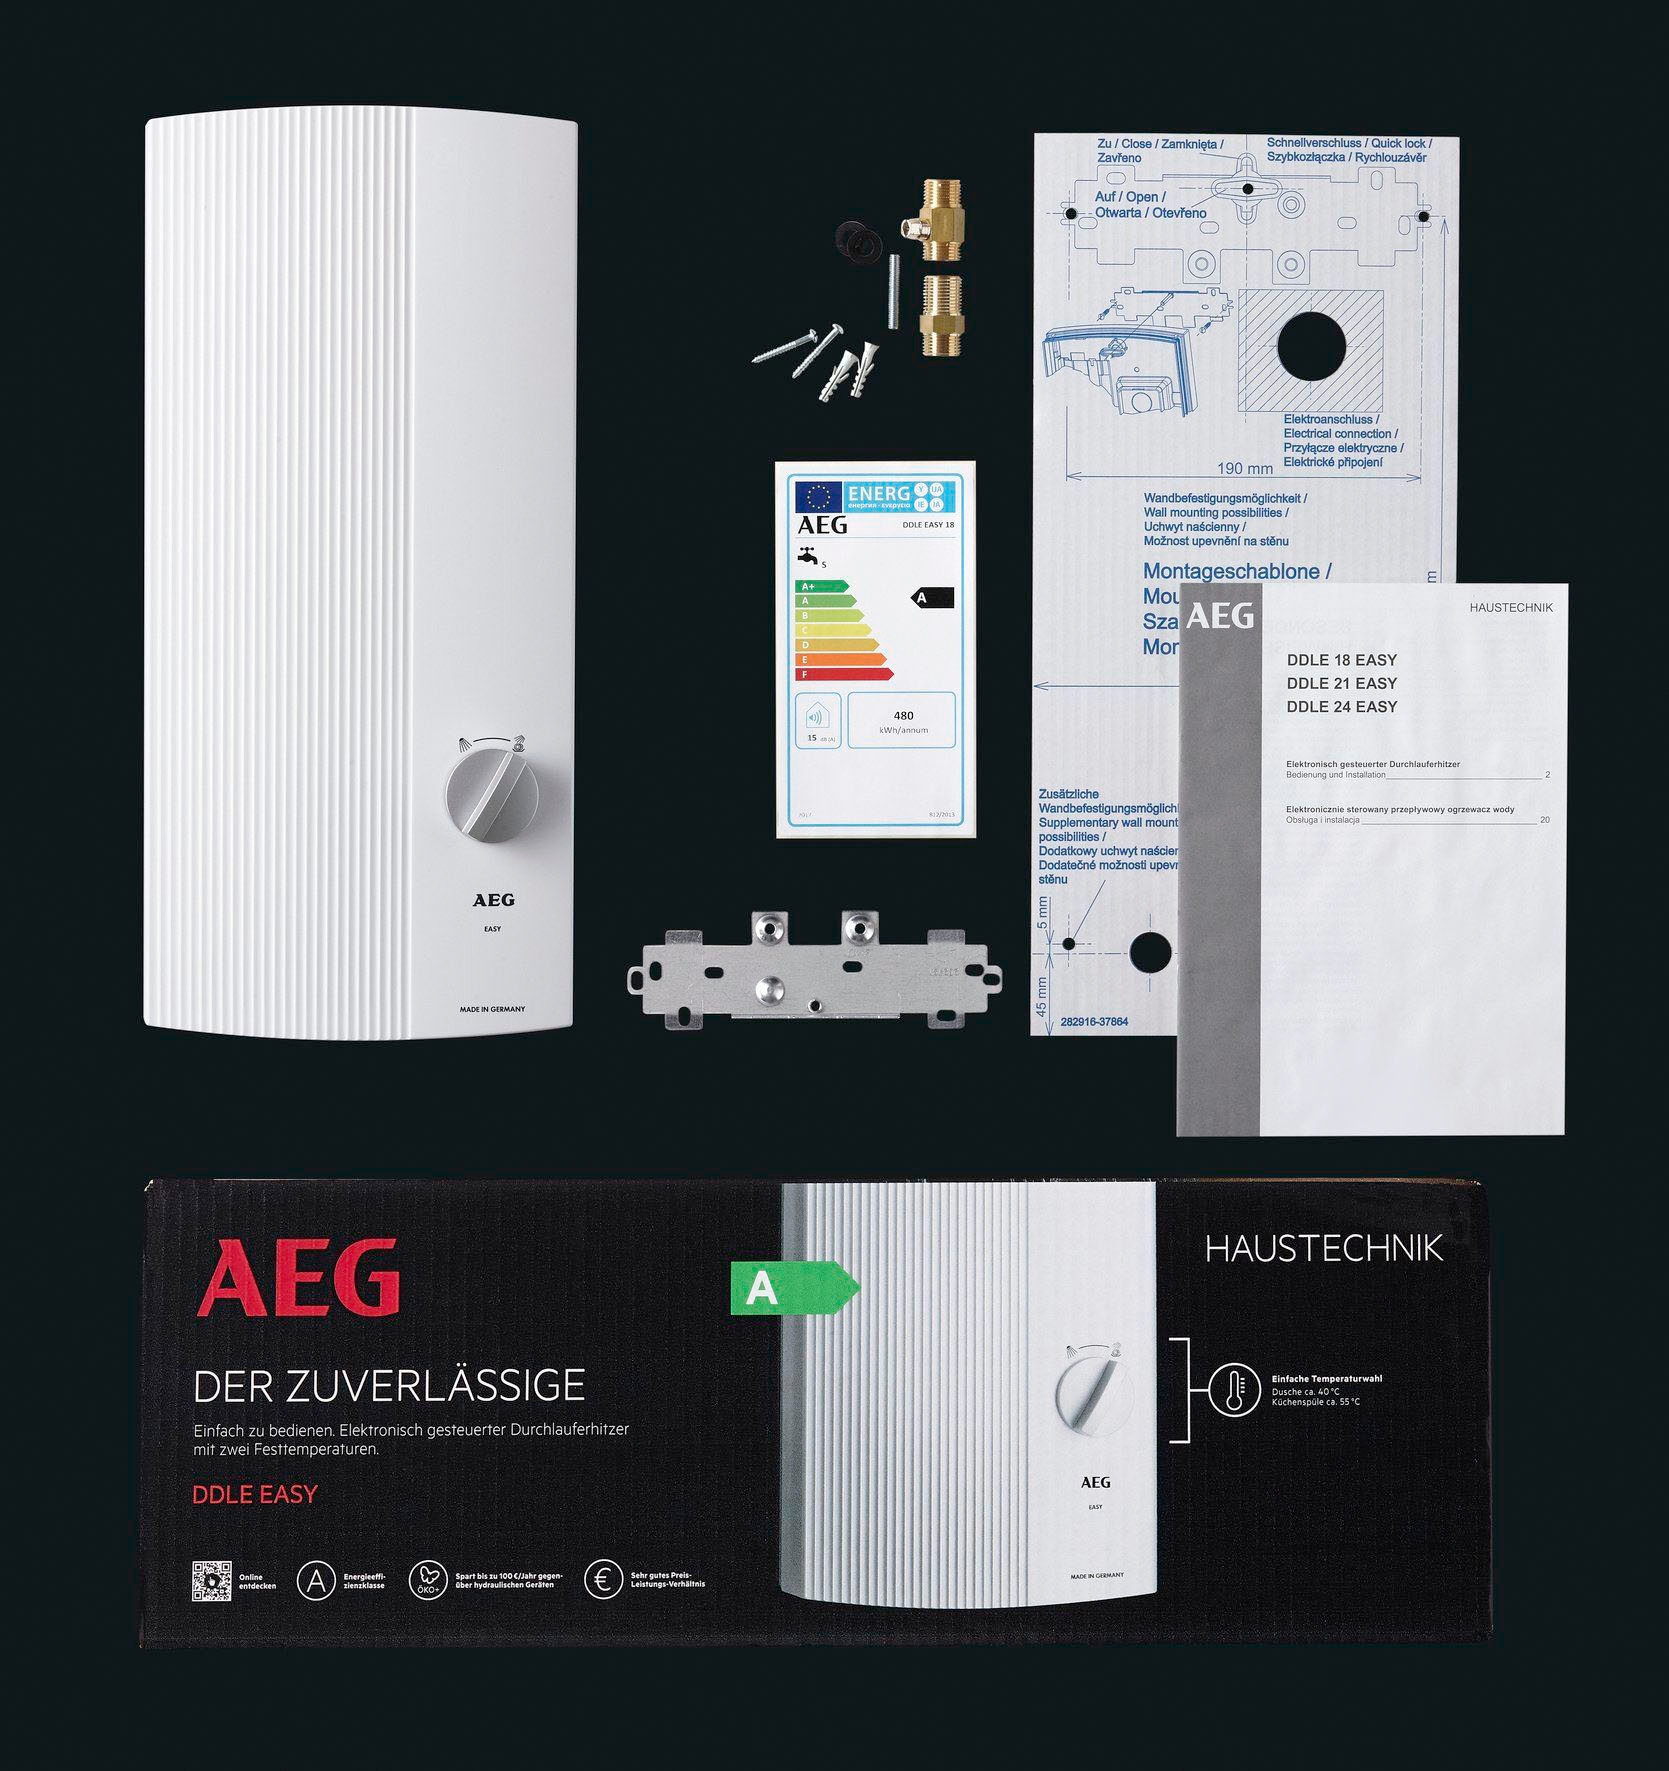 AEG Haustechnik Komfort-Durchlauferhitzer »DDLE EASY 21 kW, guter Warmwasserkomfort«, zwei feste Temperatureinstellungen für Dusche und Spüle